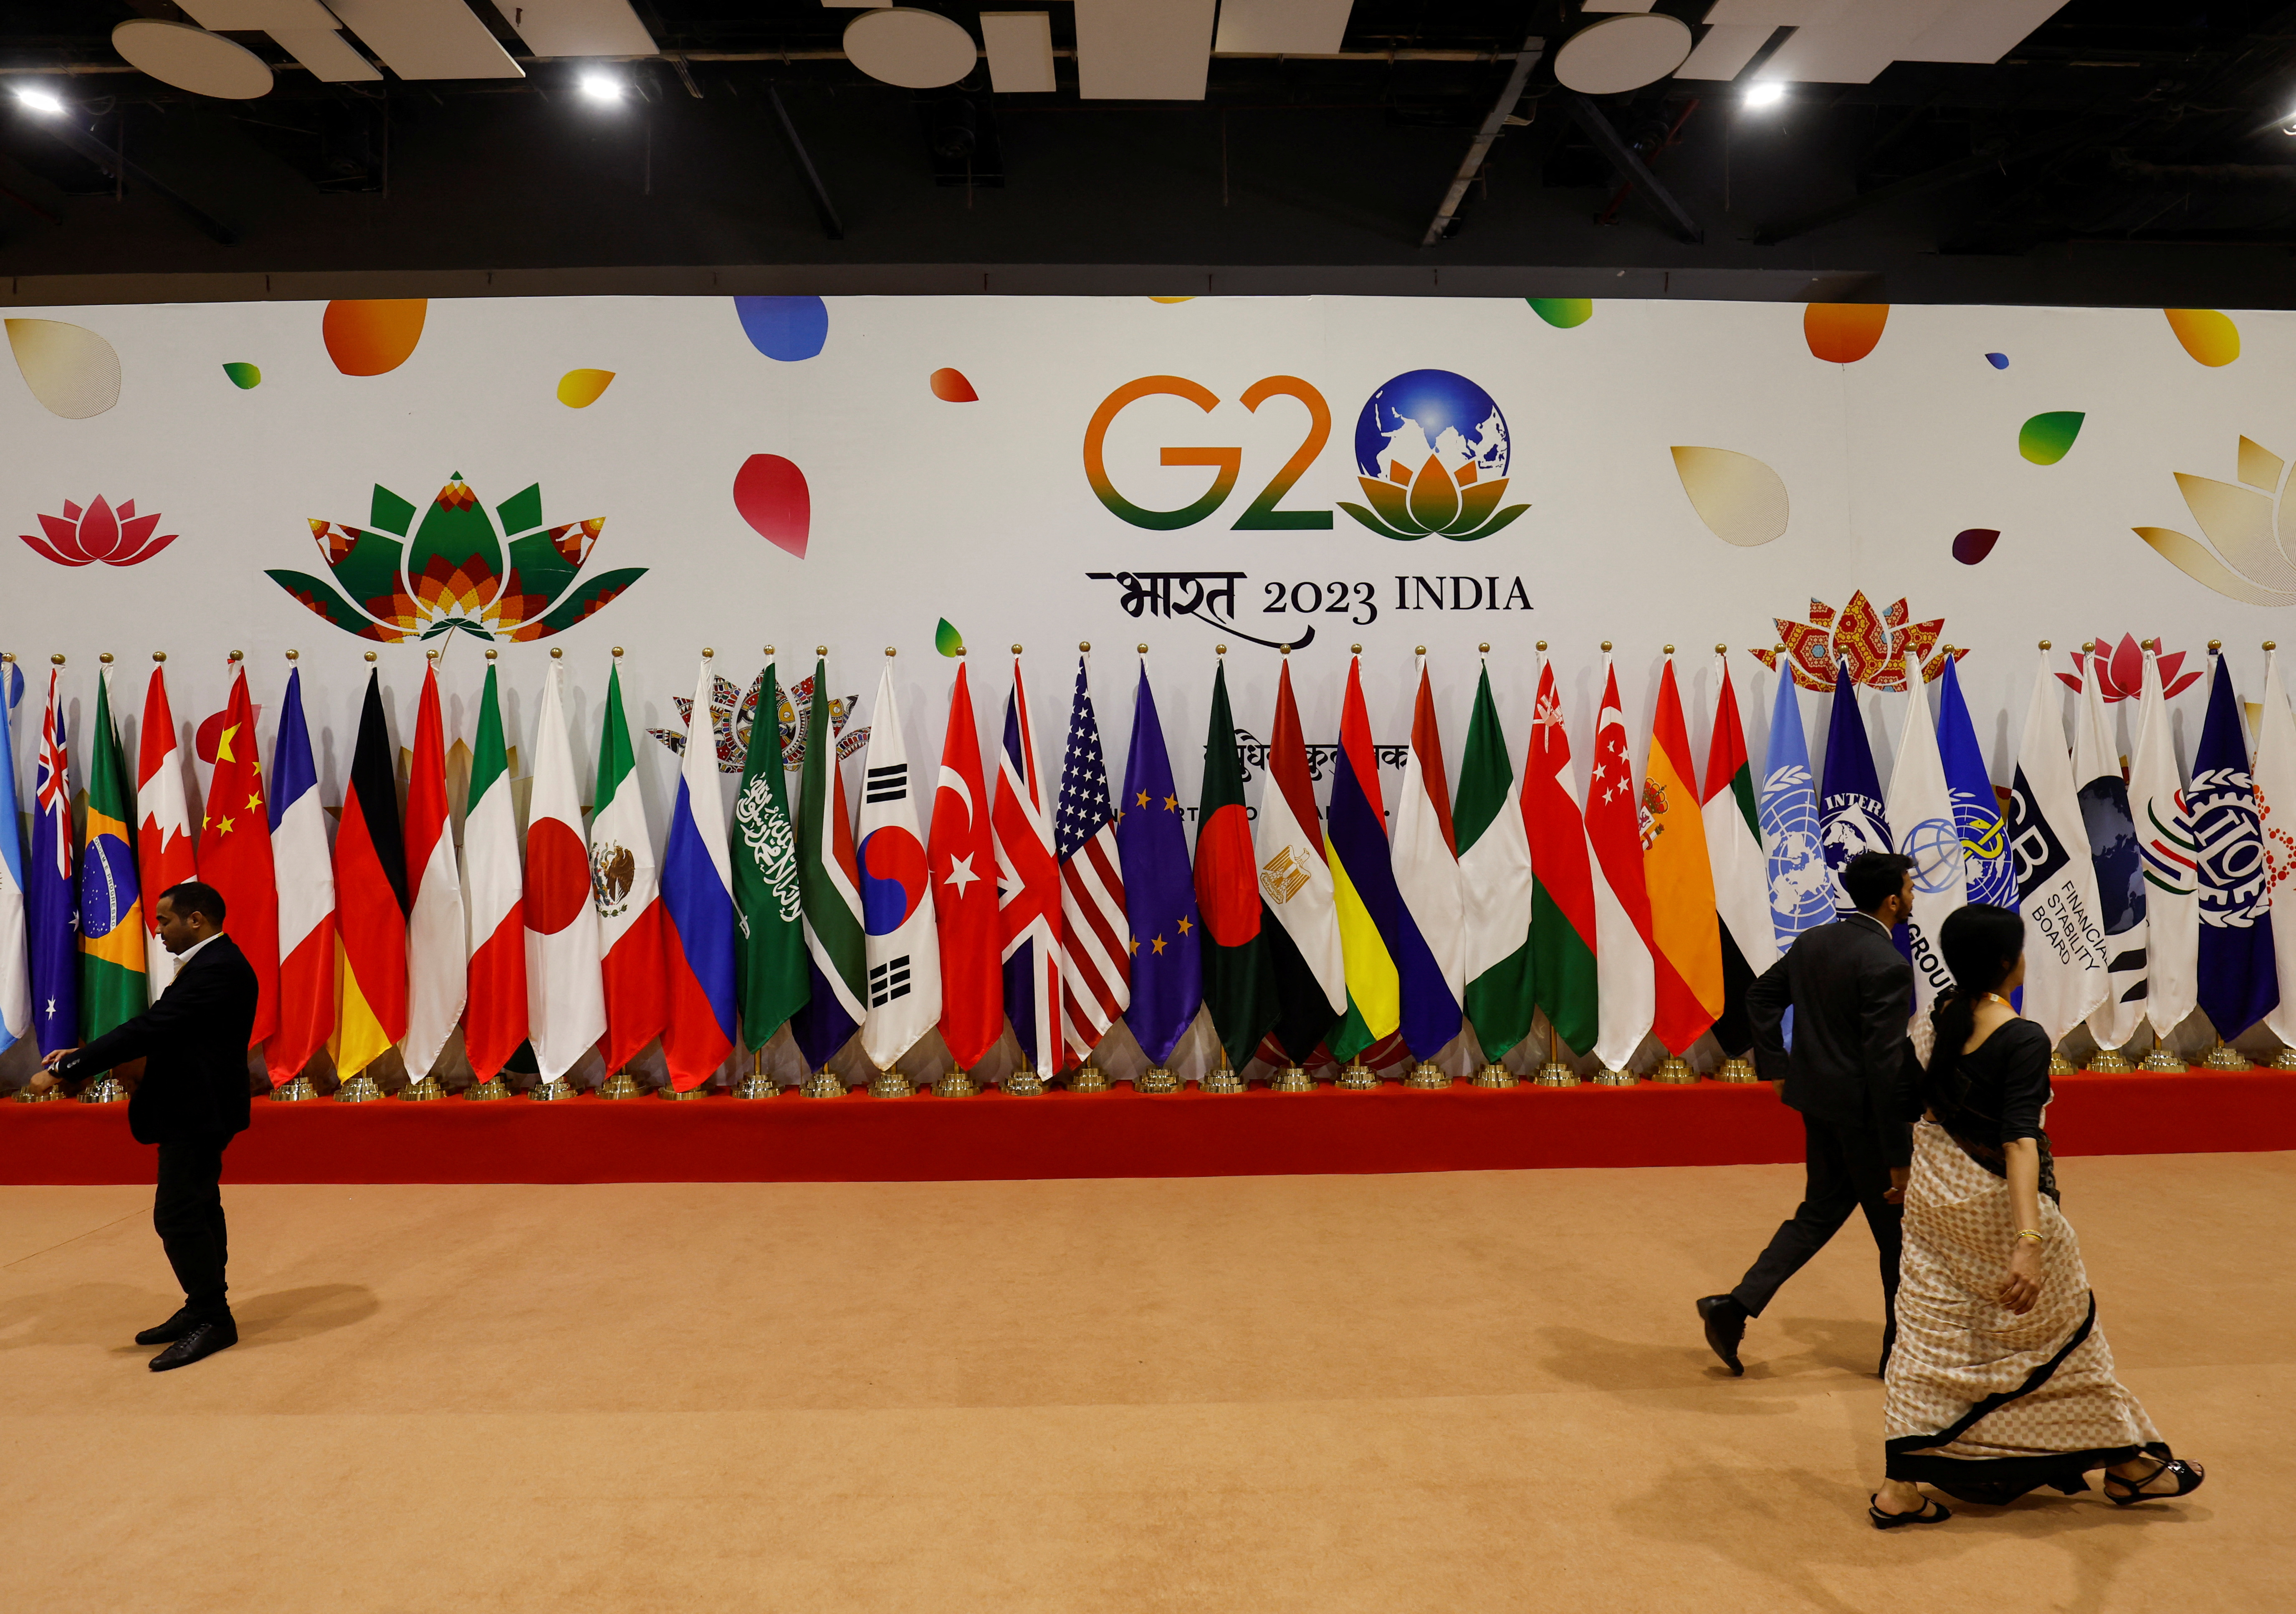 India hosts G20 leaders' summit